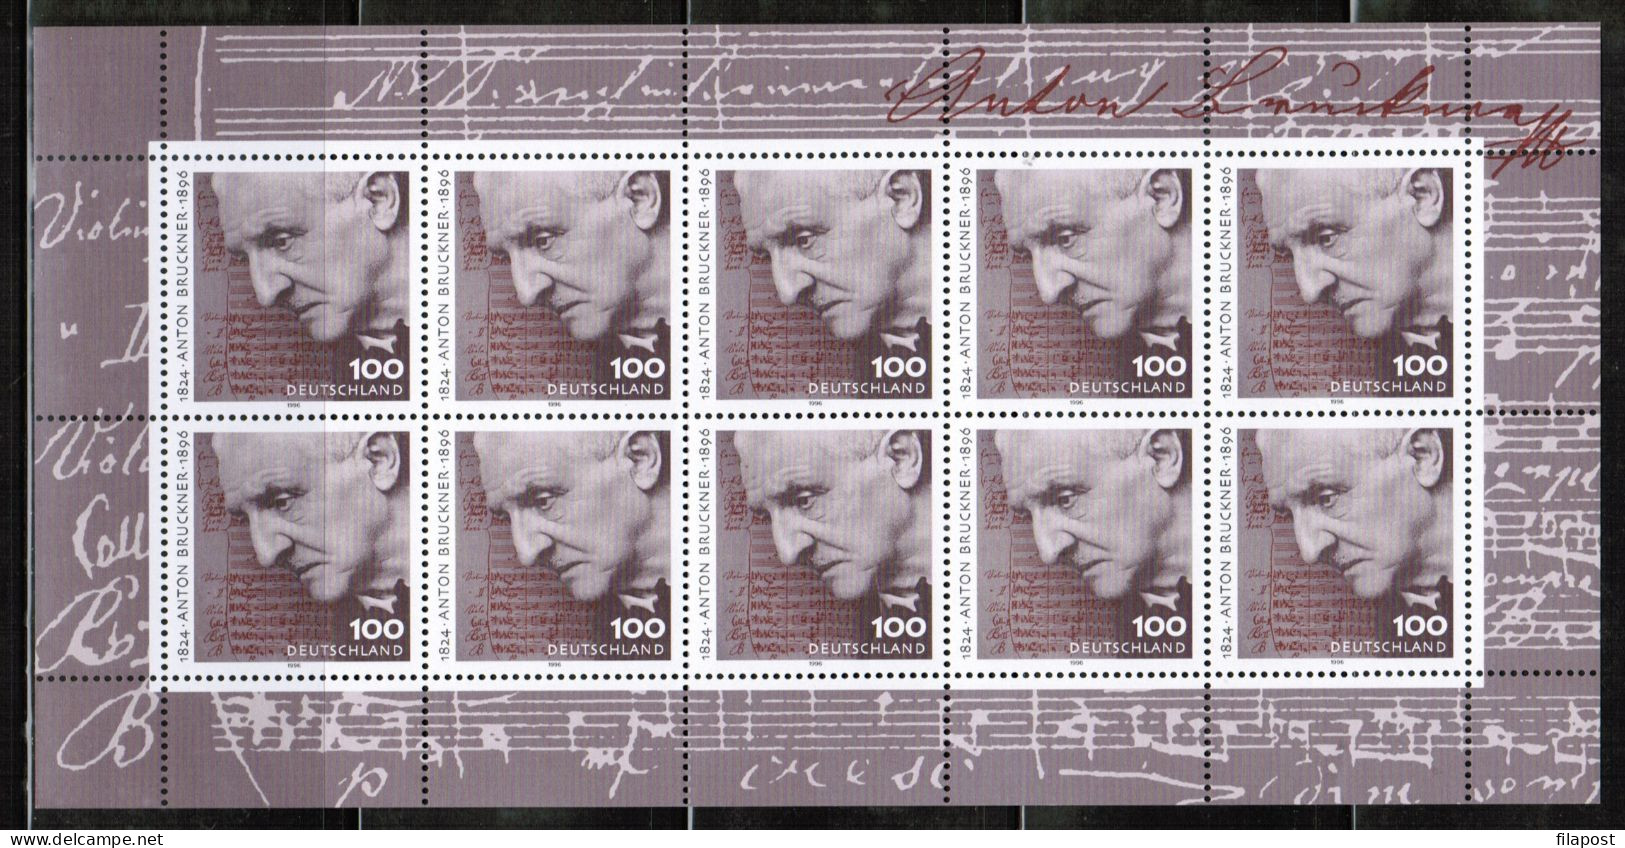 Germany 1996 / Michel 1888 Kb - Anton Bruckner, Composer, Organist, Symphony - Sheet Of 10 Stamps MNH - Unused Stamps